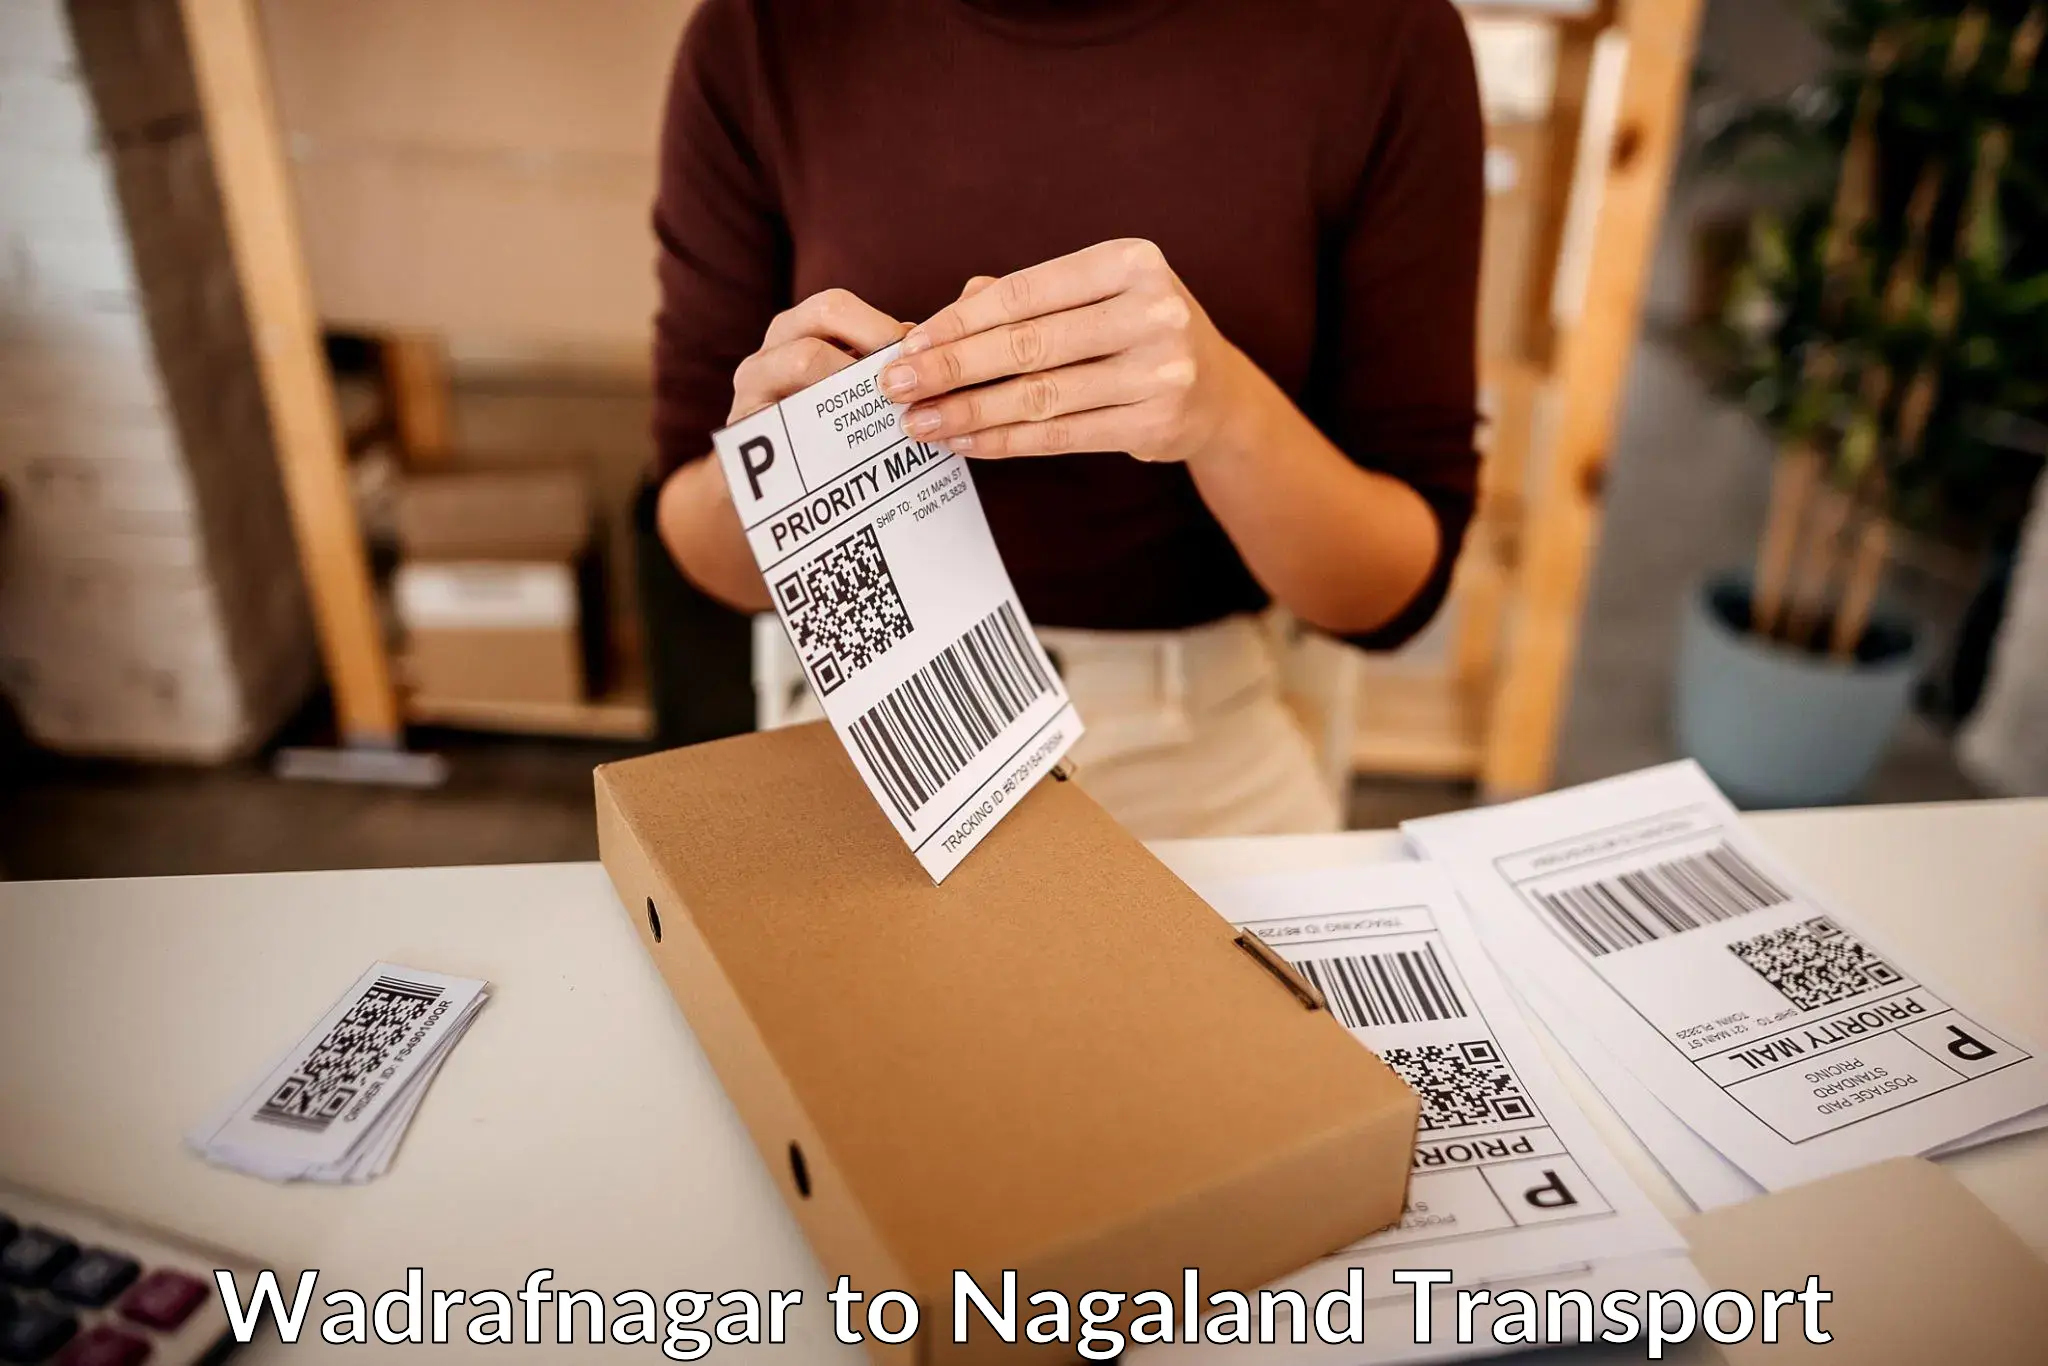 Road transport online services Wadrafnagar to NIT Nagaland